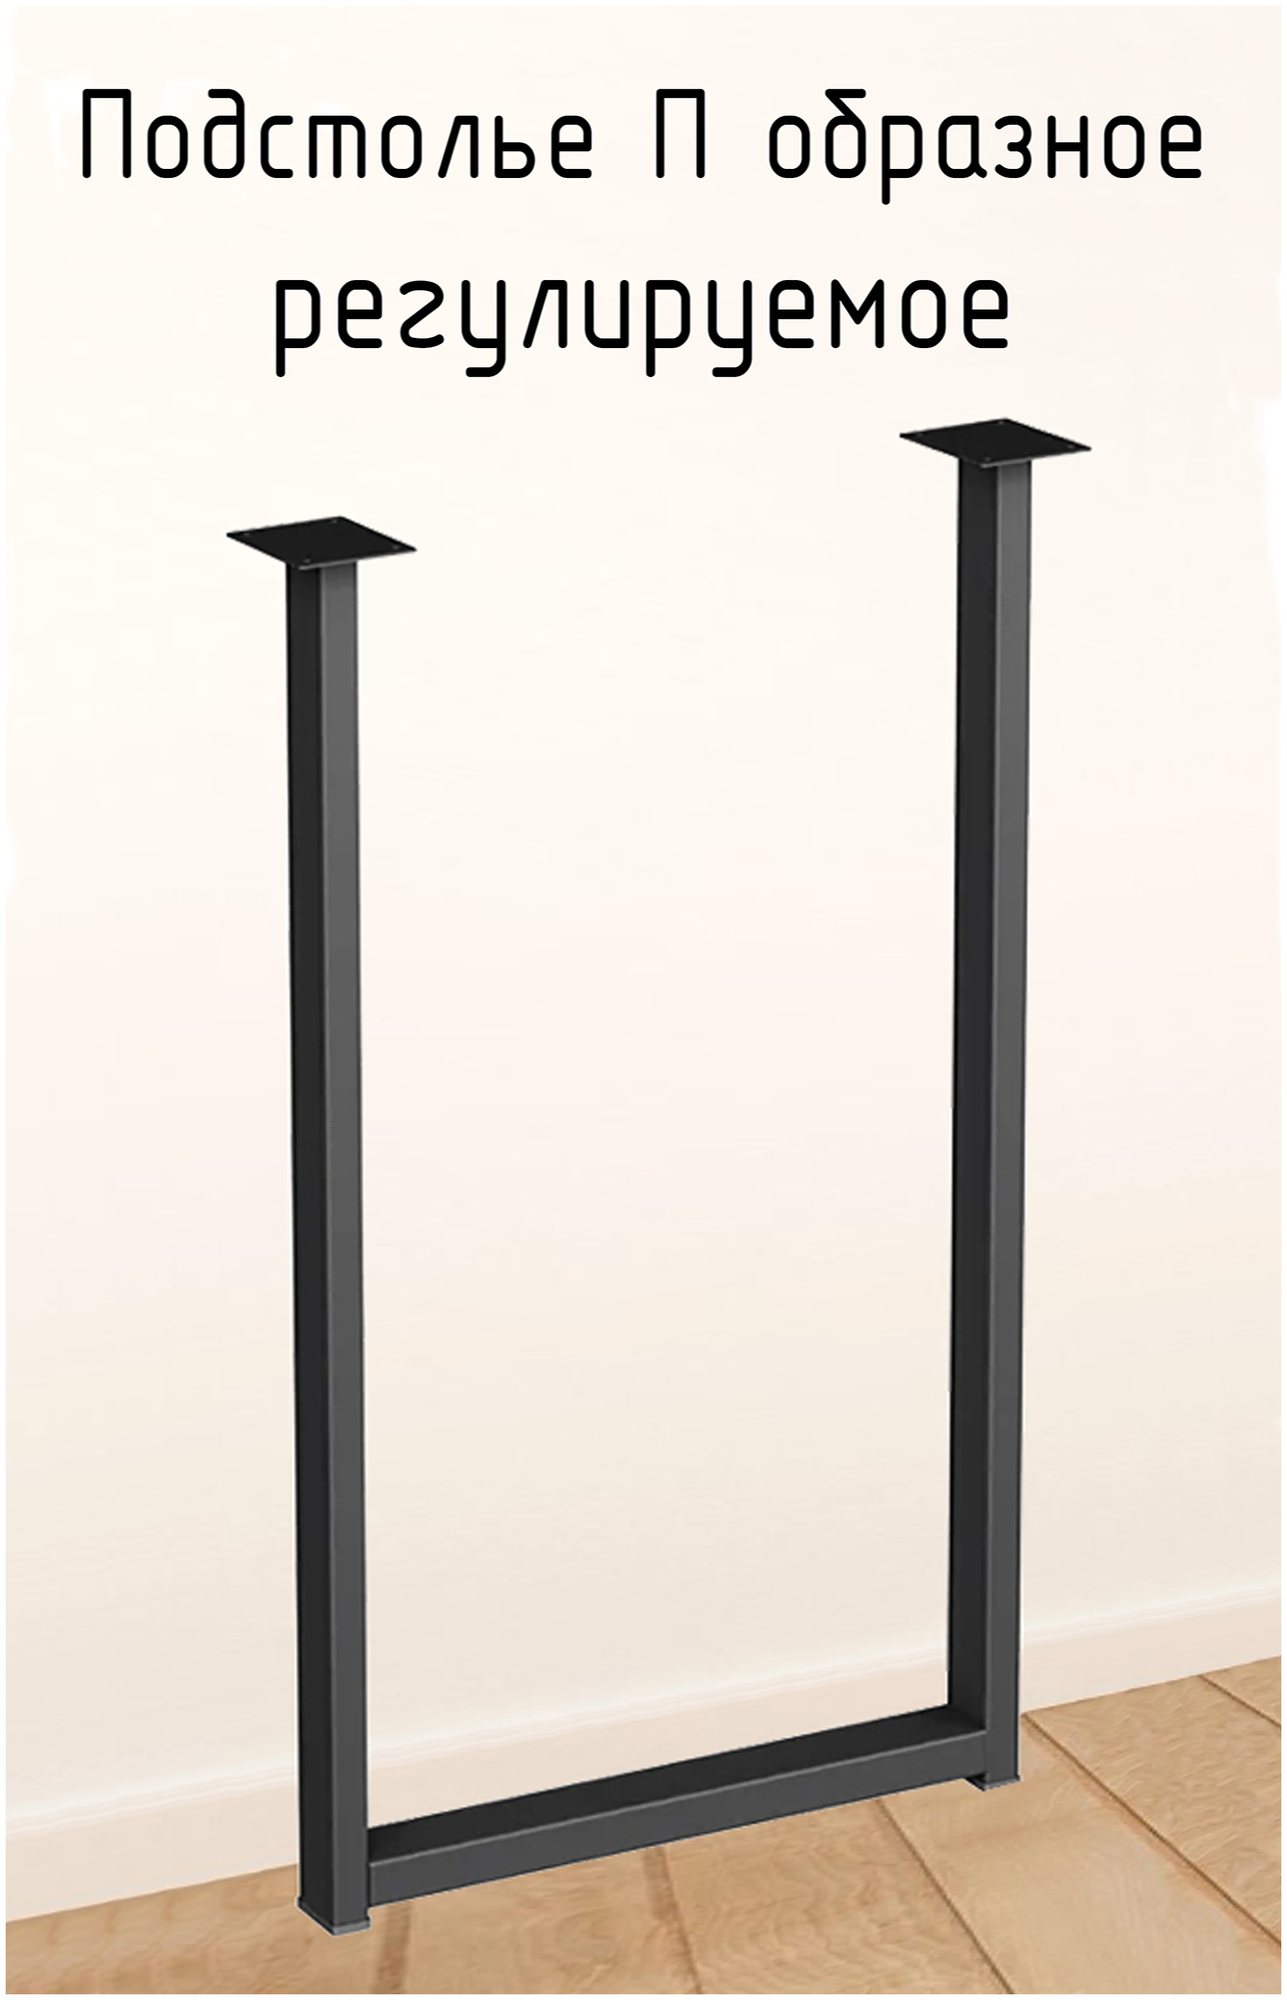 Подстолье для стола 750 350 50 мм П образное регулируемое Лофт прямоугольное металлическое барное 1 шт.